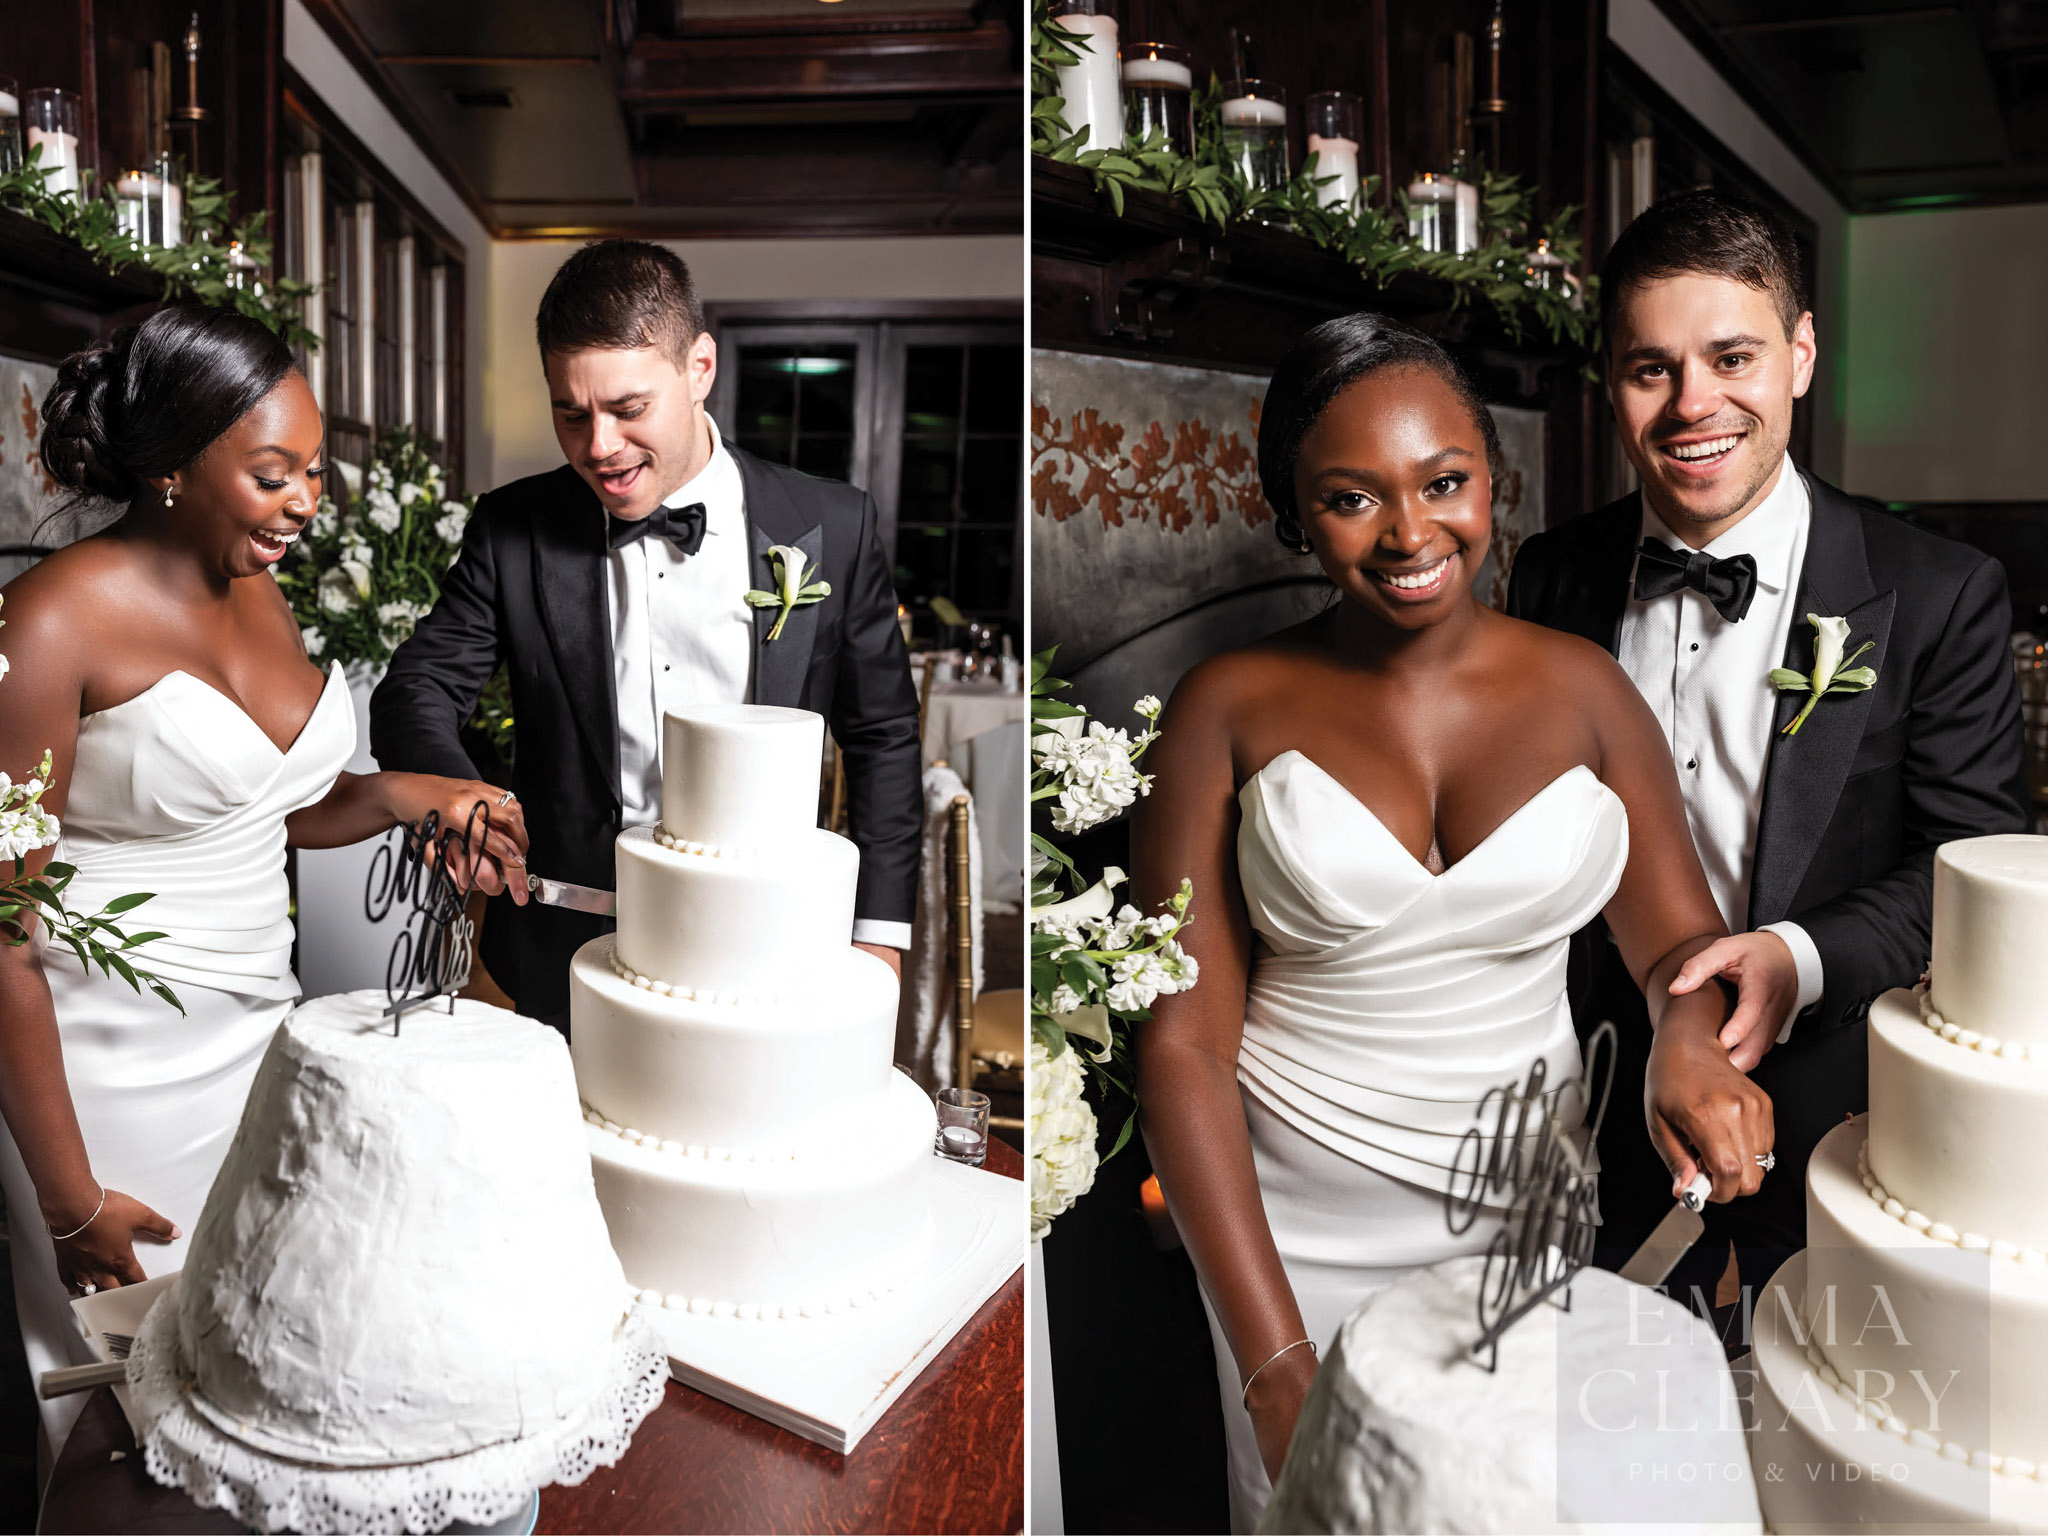 Couple and wedding cake